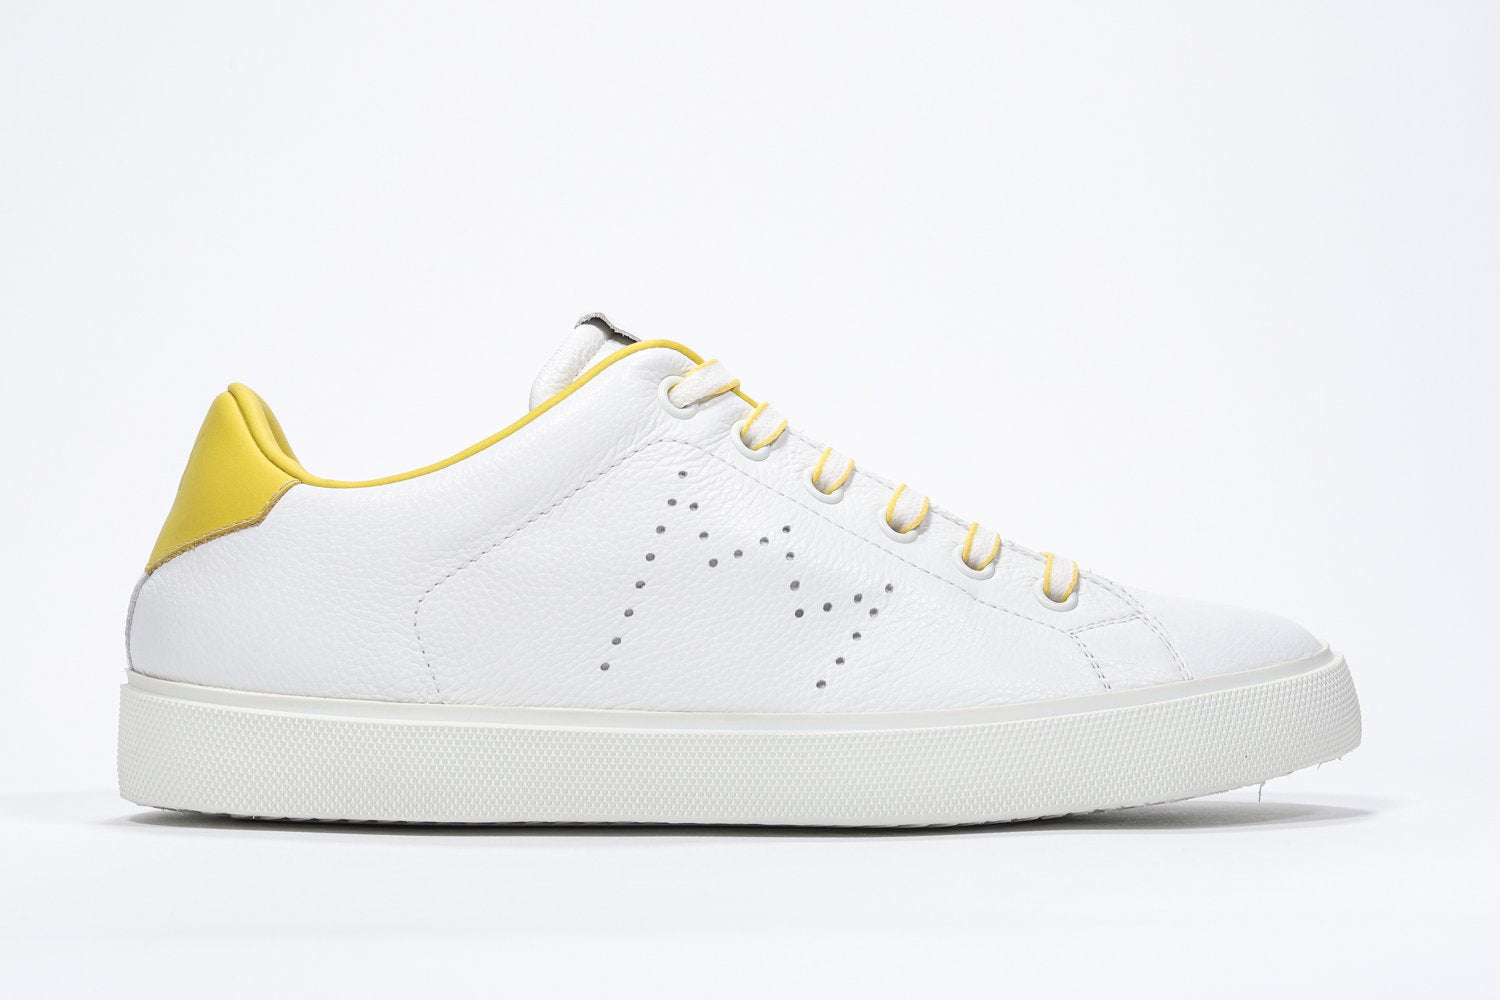 Weißes Low-Top-Profil sneaker mit gelben Details und perforiertem Kronenlogo auf dem Schaft. Schaft aus Vollleder und weiße Gummisohle.